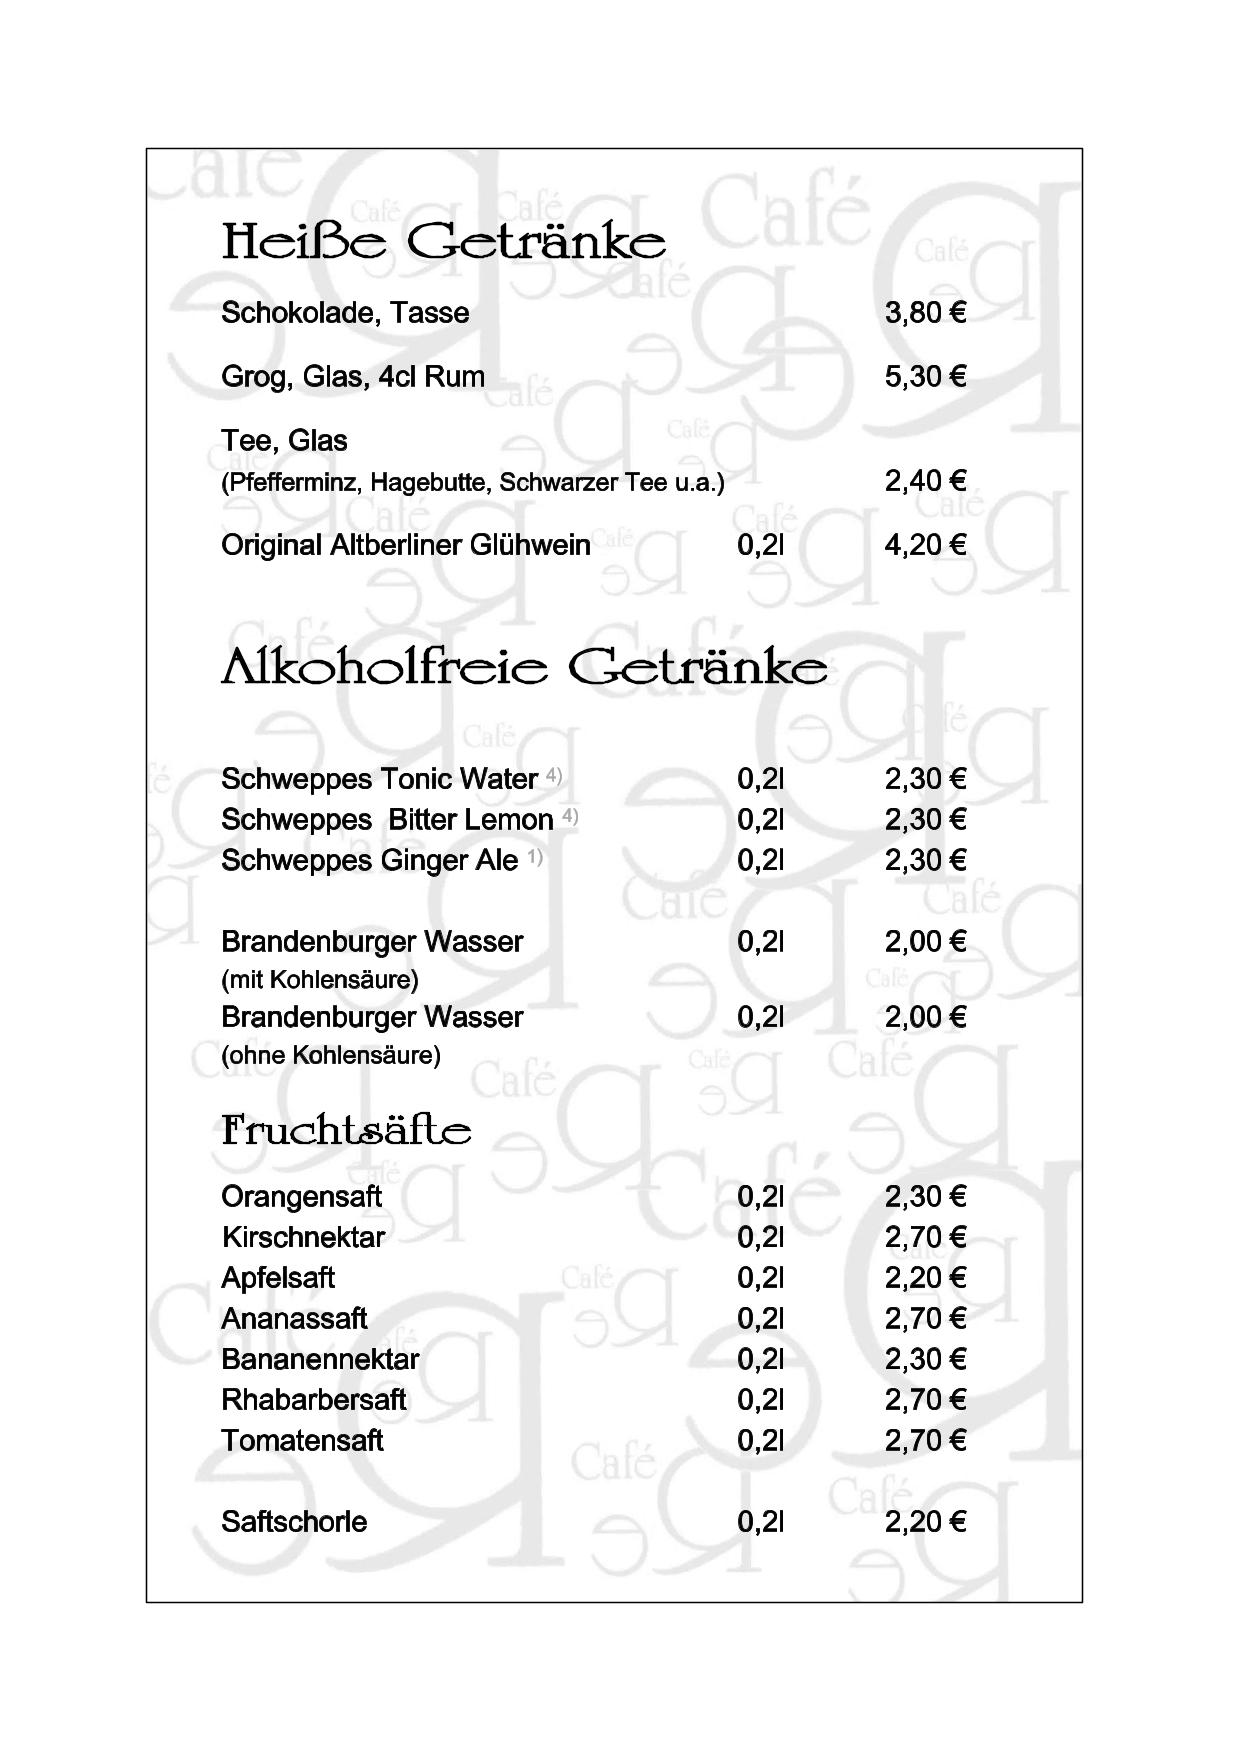 5555Heisse-Getraenke-Alkoholfreie-Getraenke-1